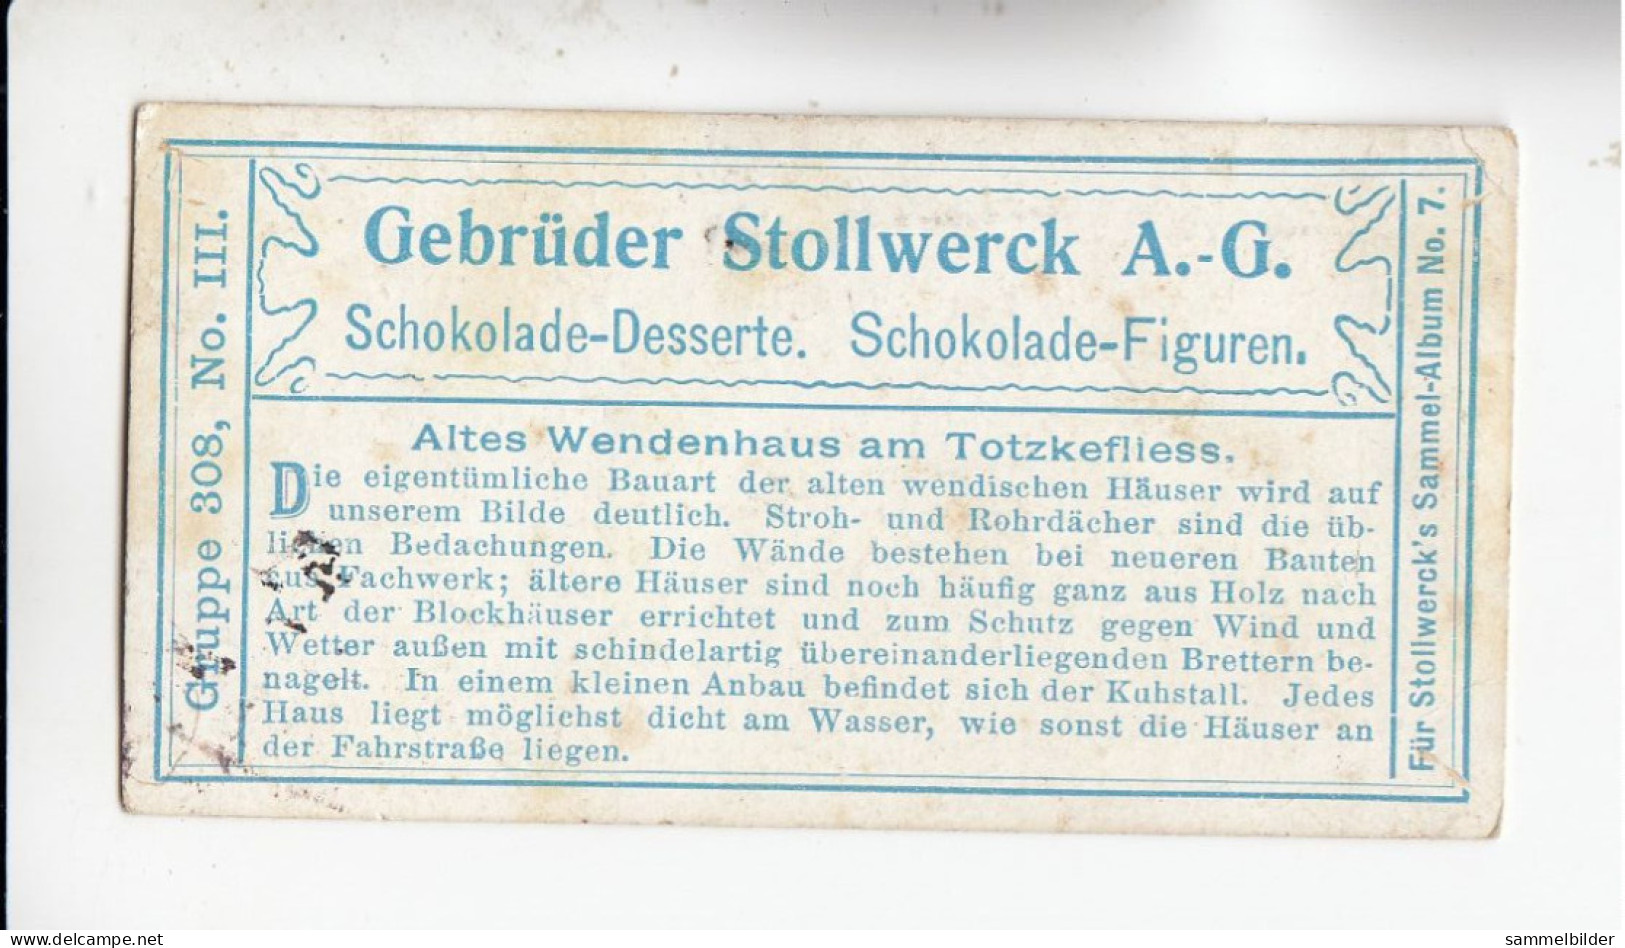 Stollwerck Album No 7 Spreewald Altes Wendenhaus Am Totzkefliess     Grp 308#3 Von 1904/05 - Stollwerck